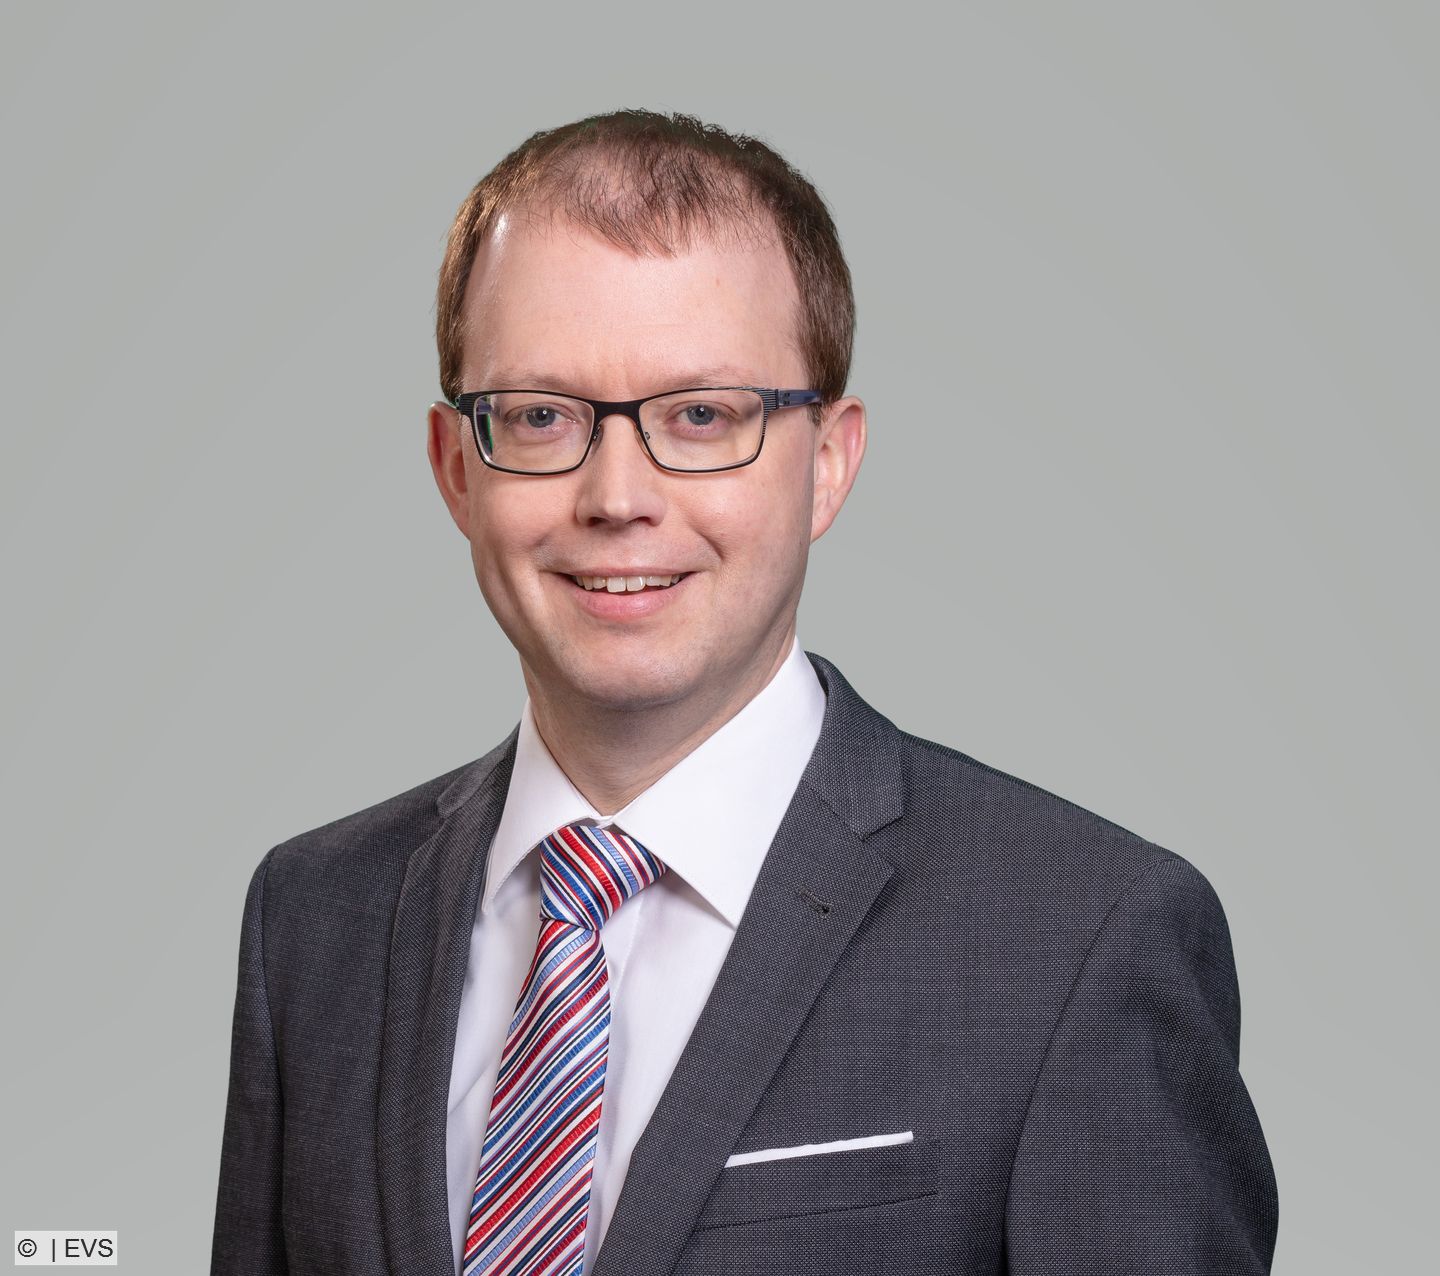 Holger Schmitt zum neuen EVS-Geschäftsführer gewählt